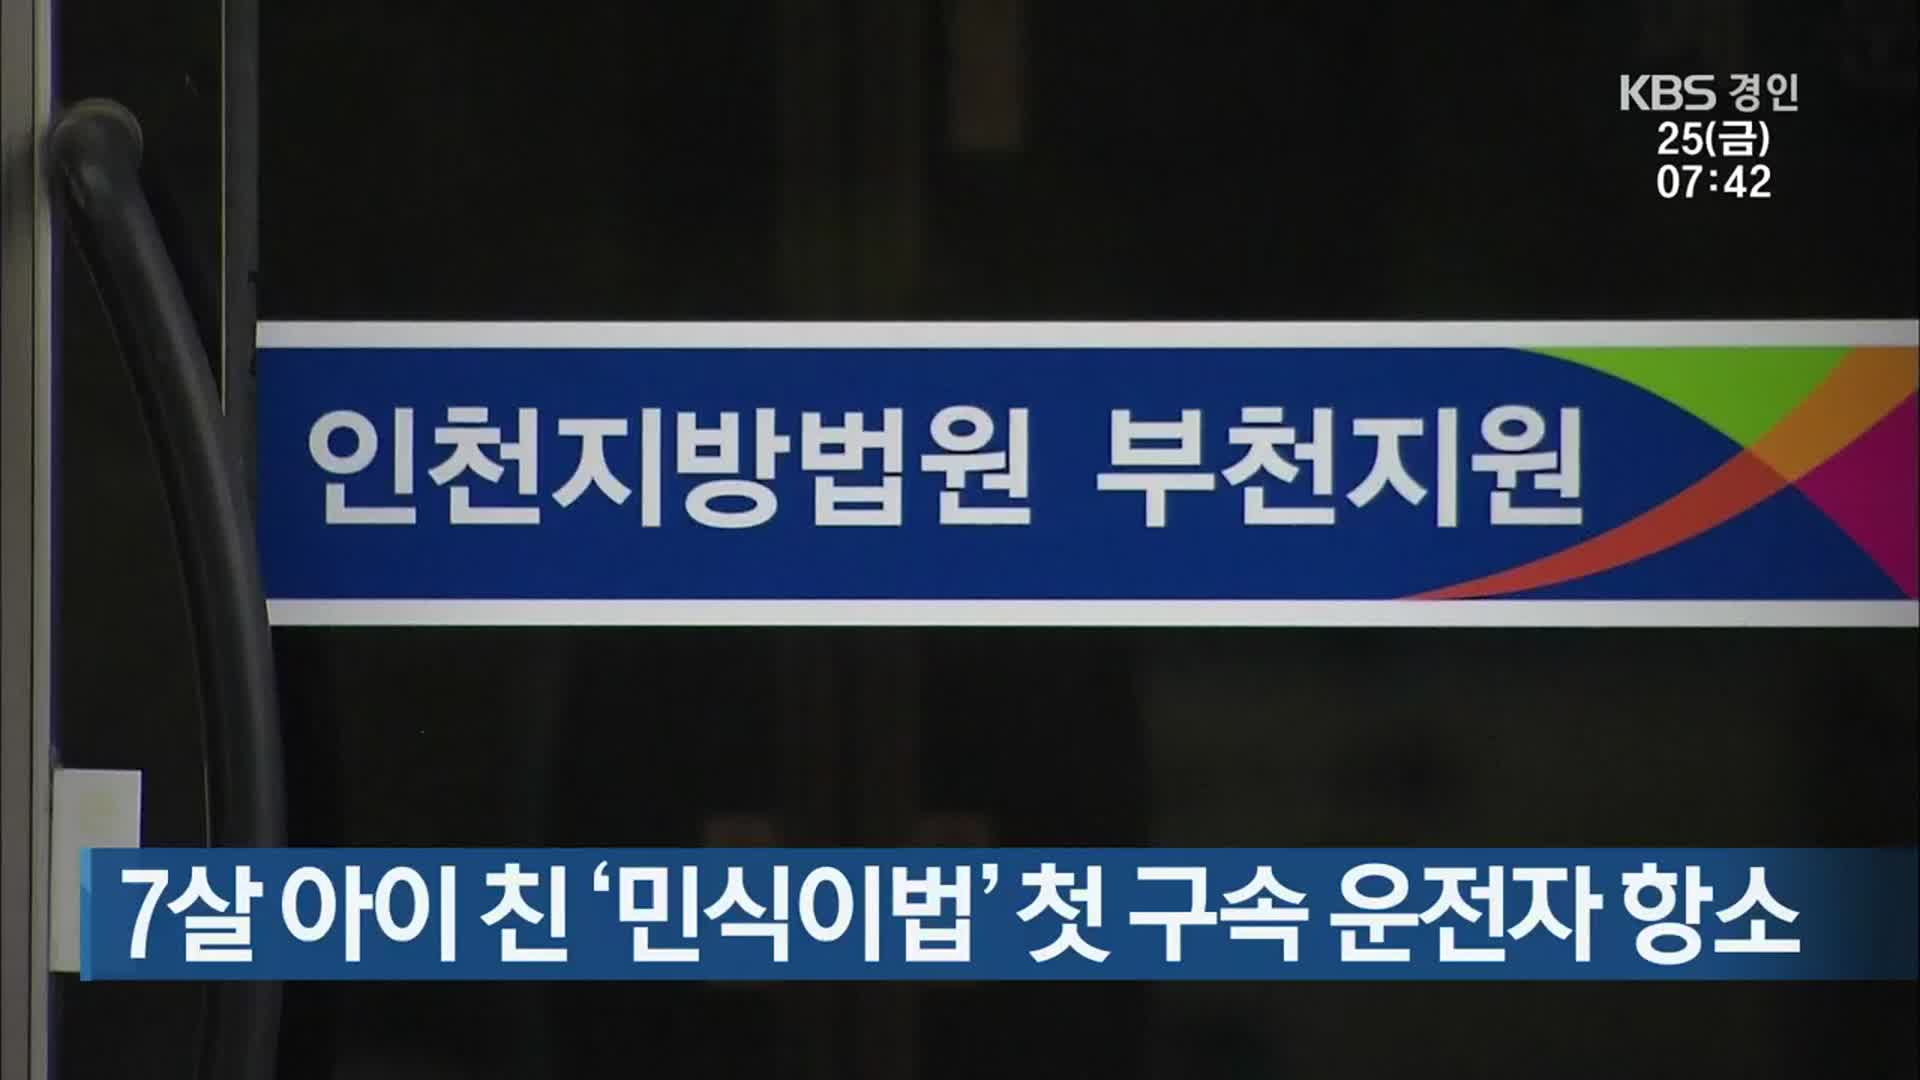 7살 아이 친 ‘민식이법’ 첫 구속 운전자 항소